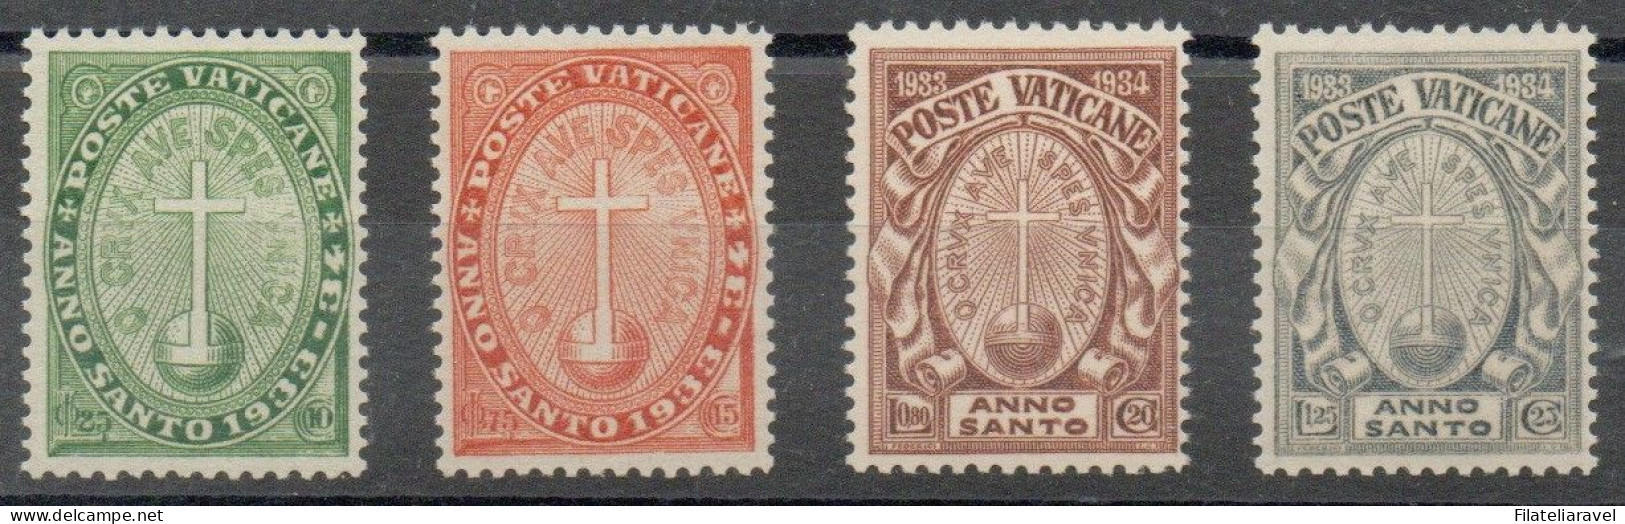 Vaticano - 1933 - "Anno Santo Straordinario", Serie Completa, 4 Valori, Gomma Integra, Catalogo 15/18 - Unused Stamps